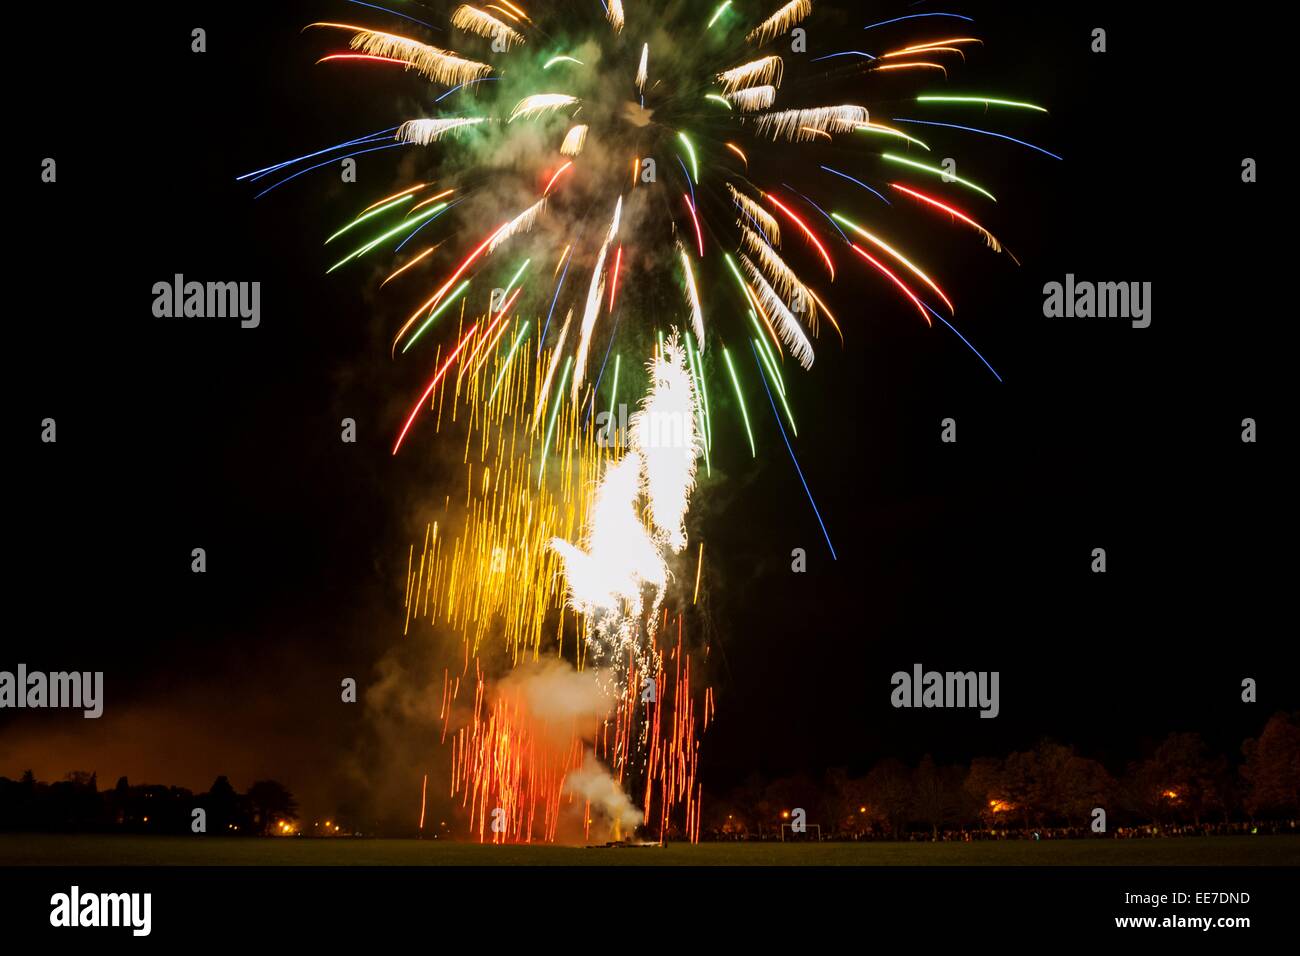 Feuerwerk im Rahmen einer öffentlichen Show am Bught Park, Inverness.  Grüne, rote, gelbe, blaue und weiße Feuerwerk explodieren gegen eine Stockfoto